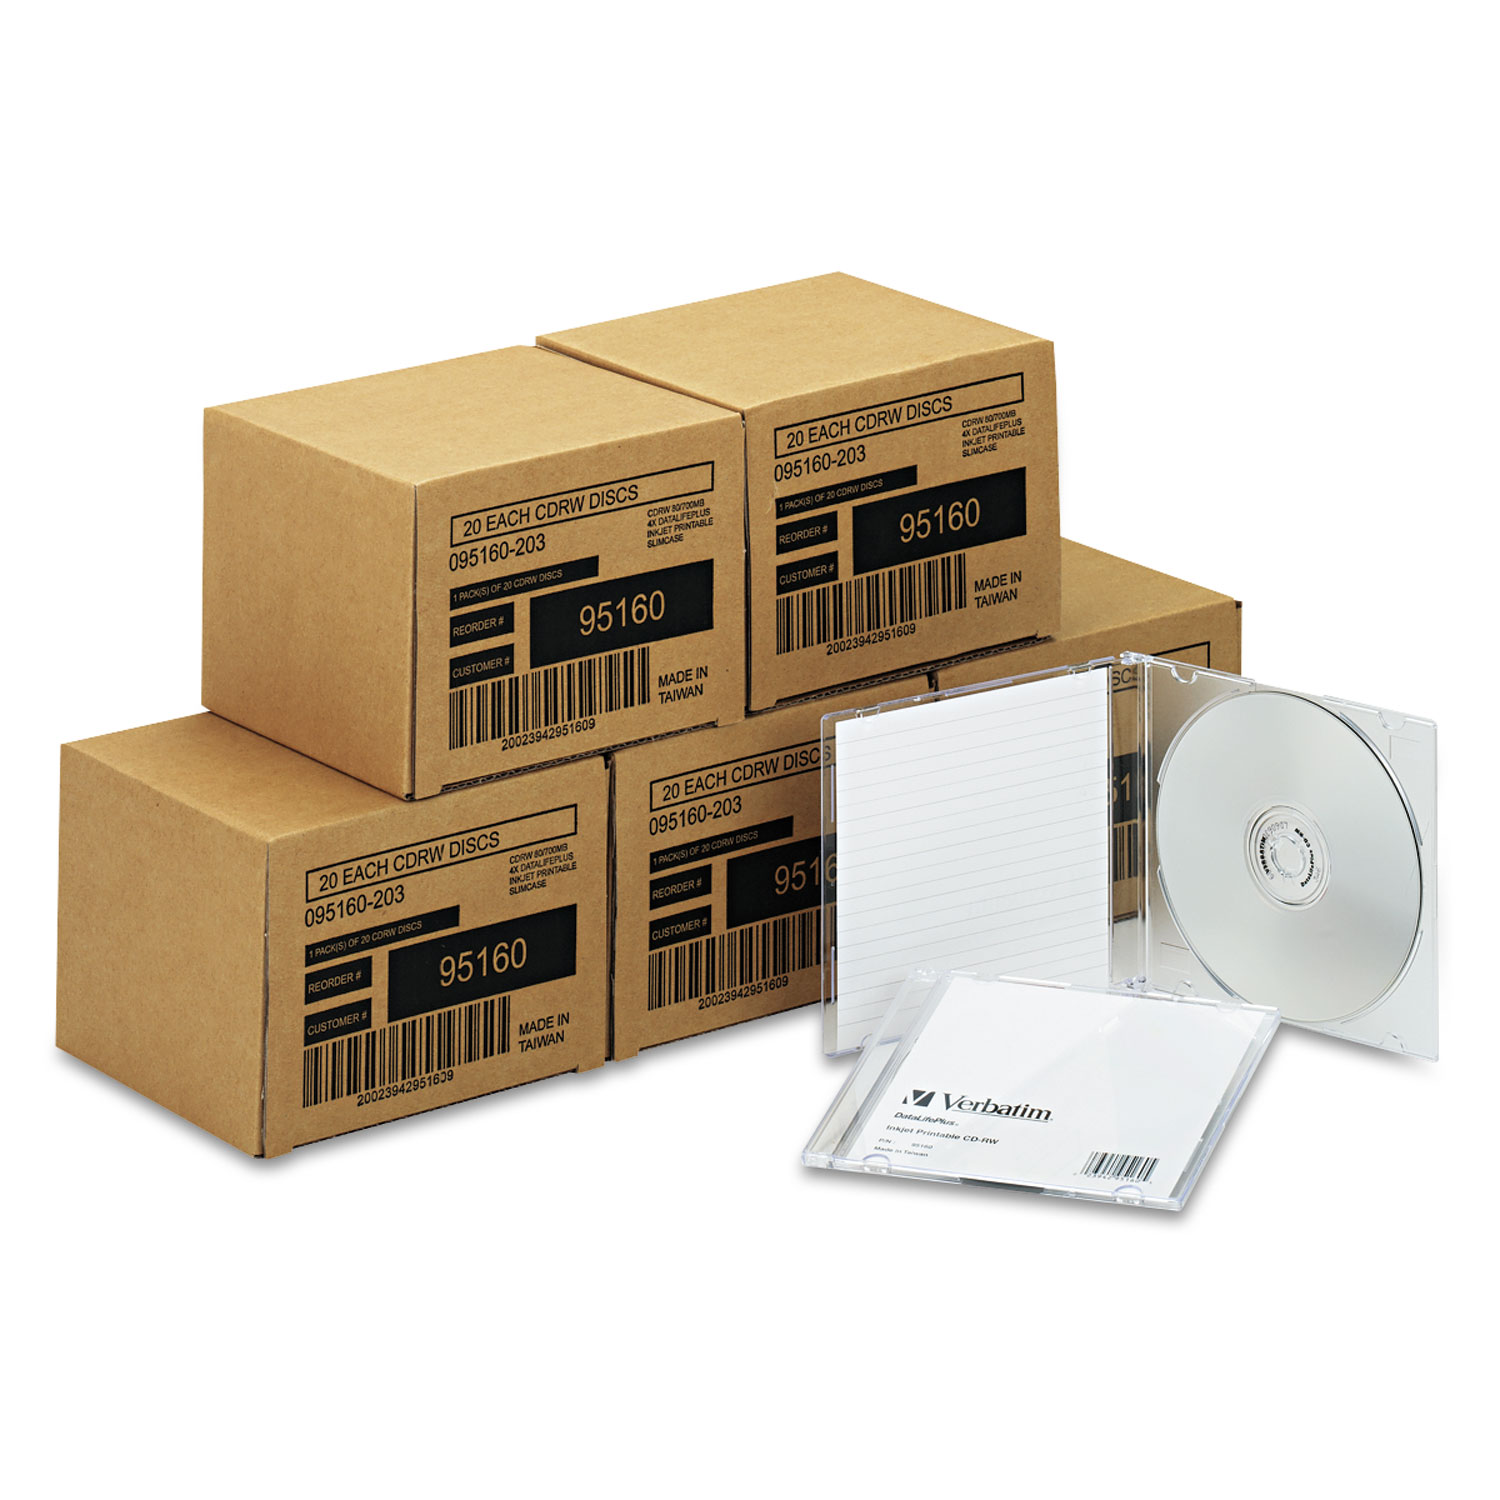 CD-RW Discs, 700MB/80min, 4x, w/Slim Jewel Cases, Silver, 100/Carton